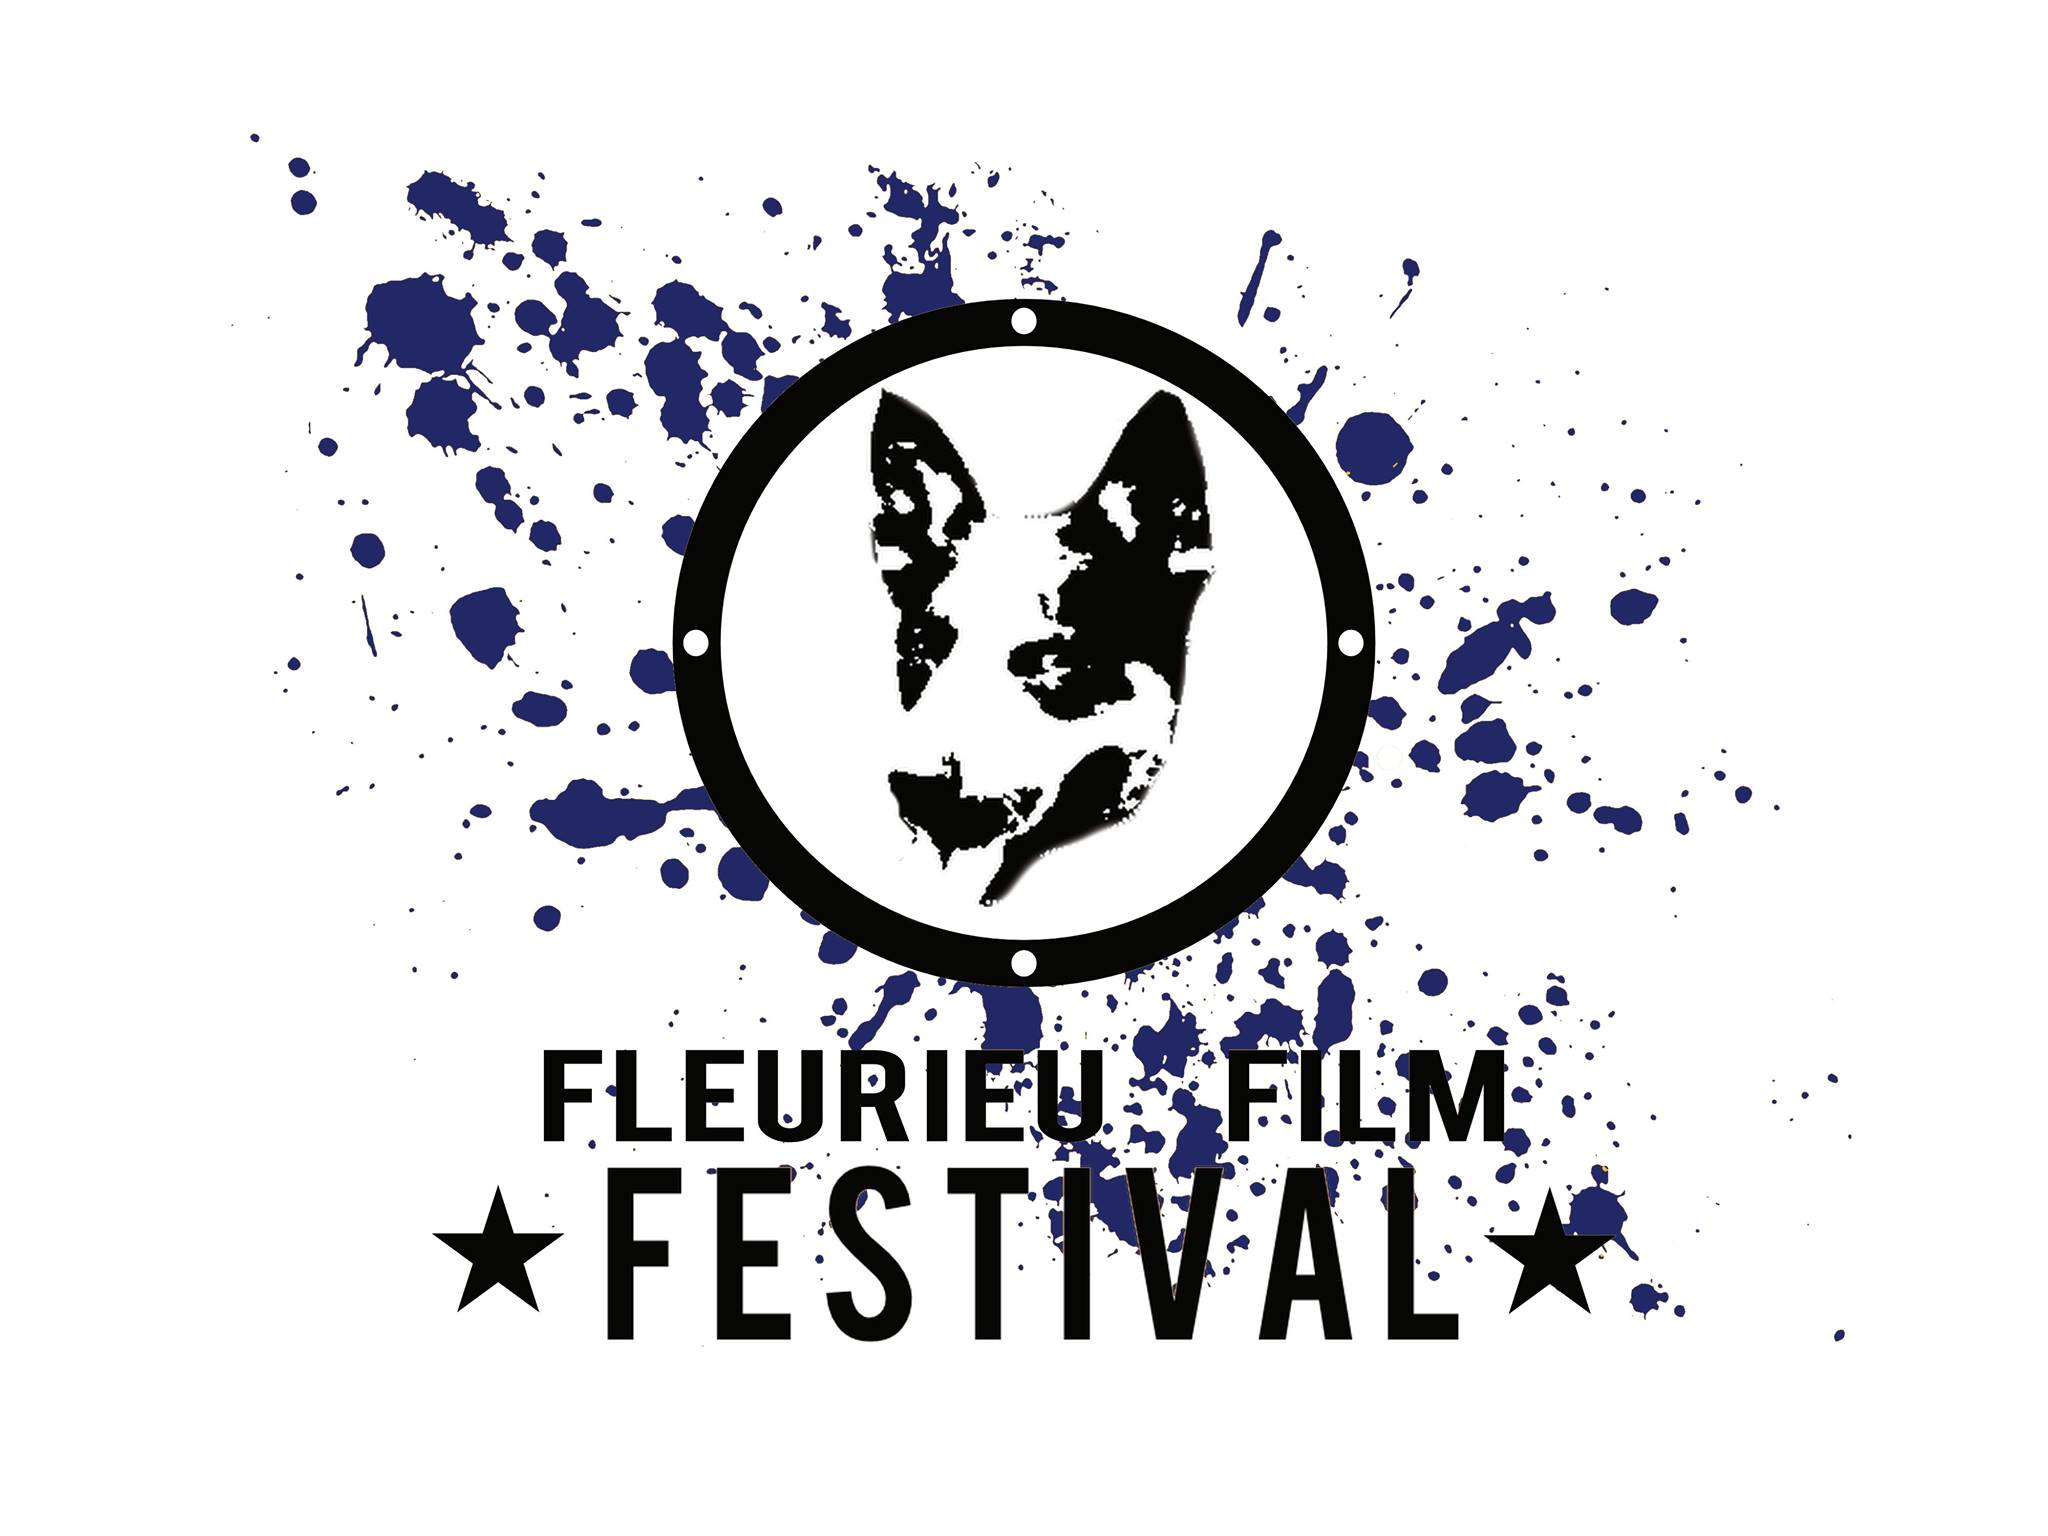 Fleurieu Film Festival - Casino Accommodation